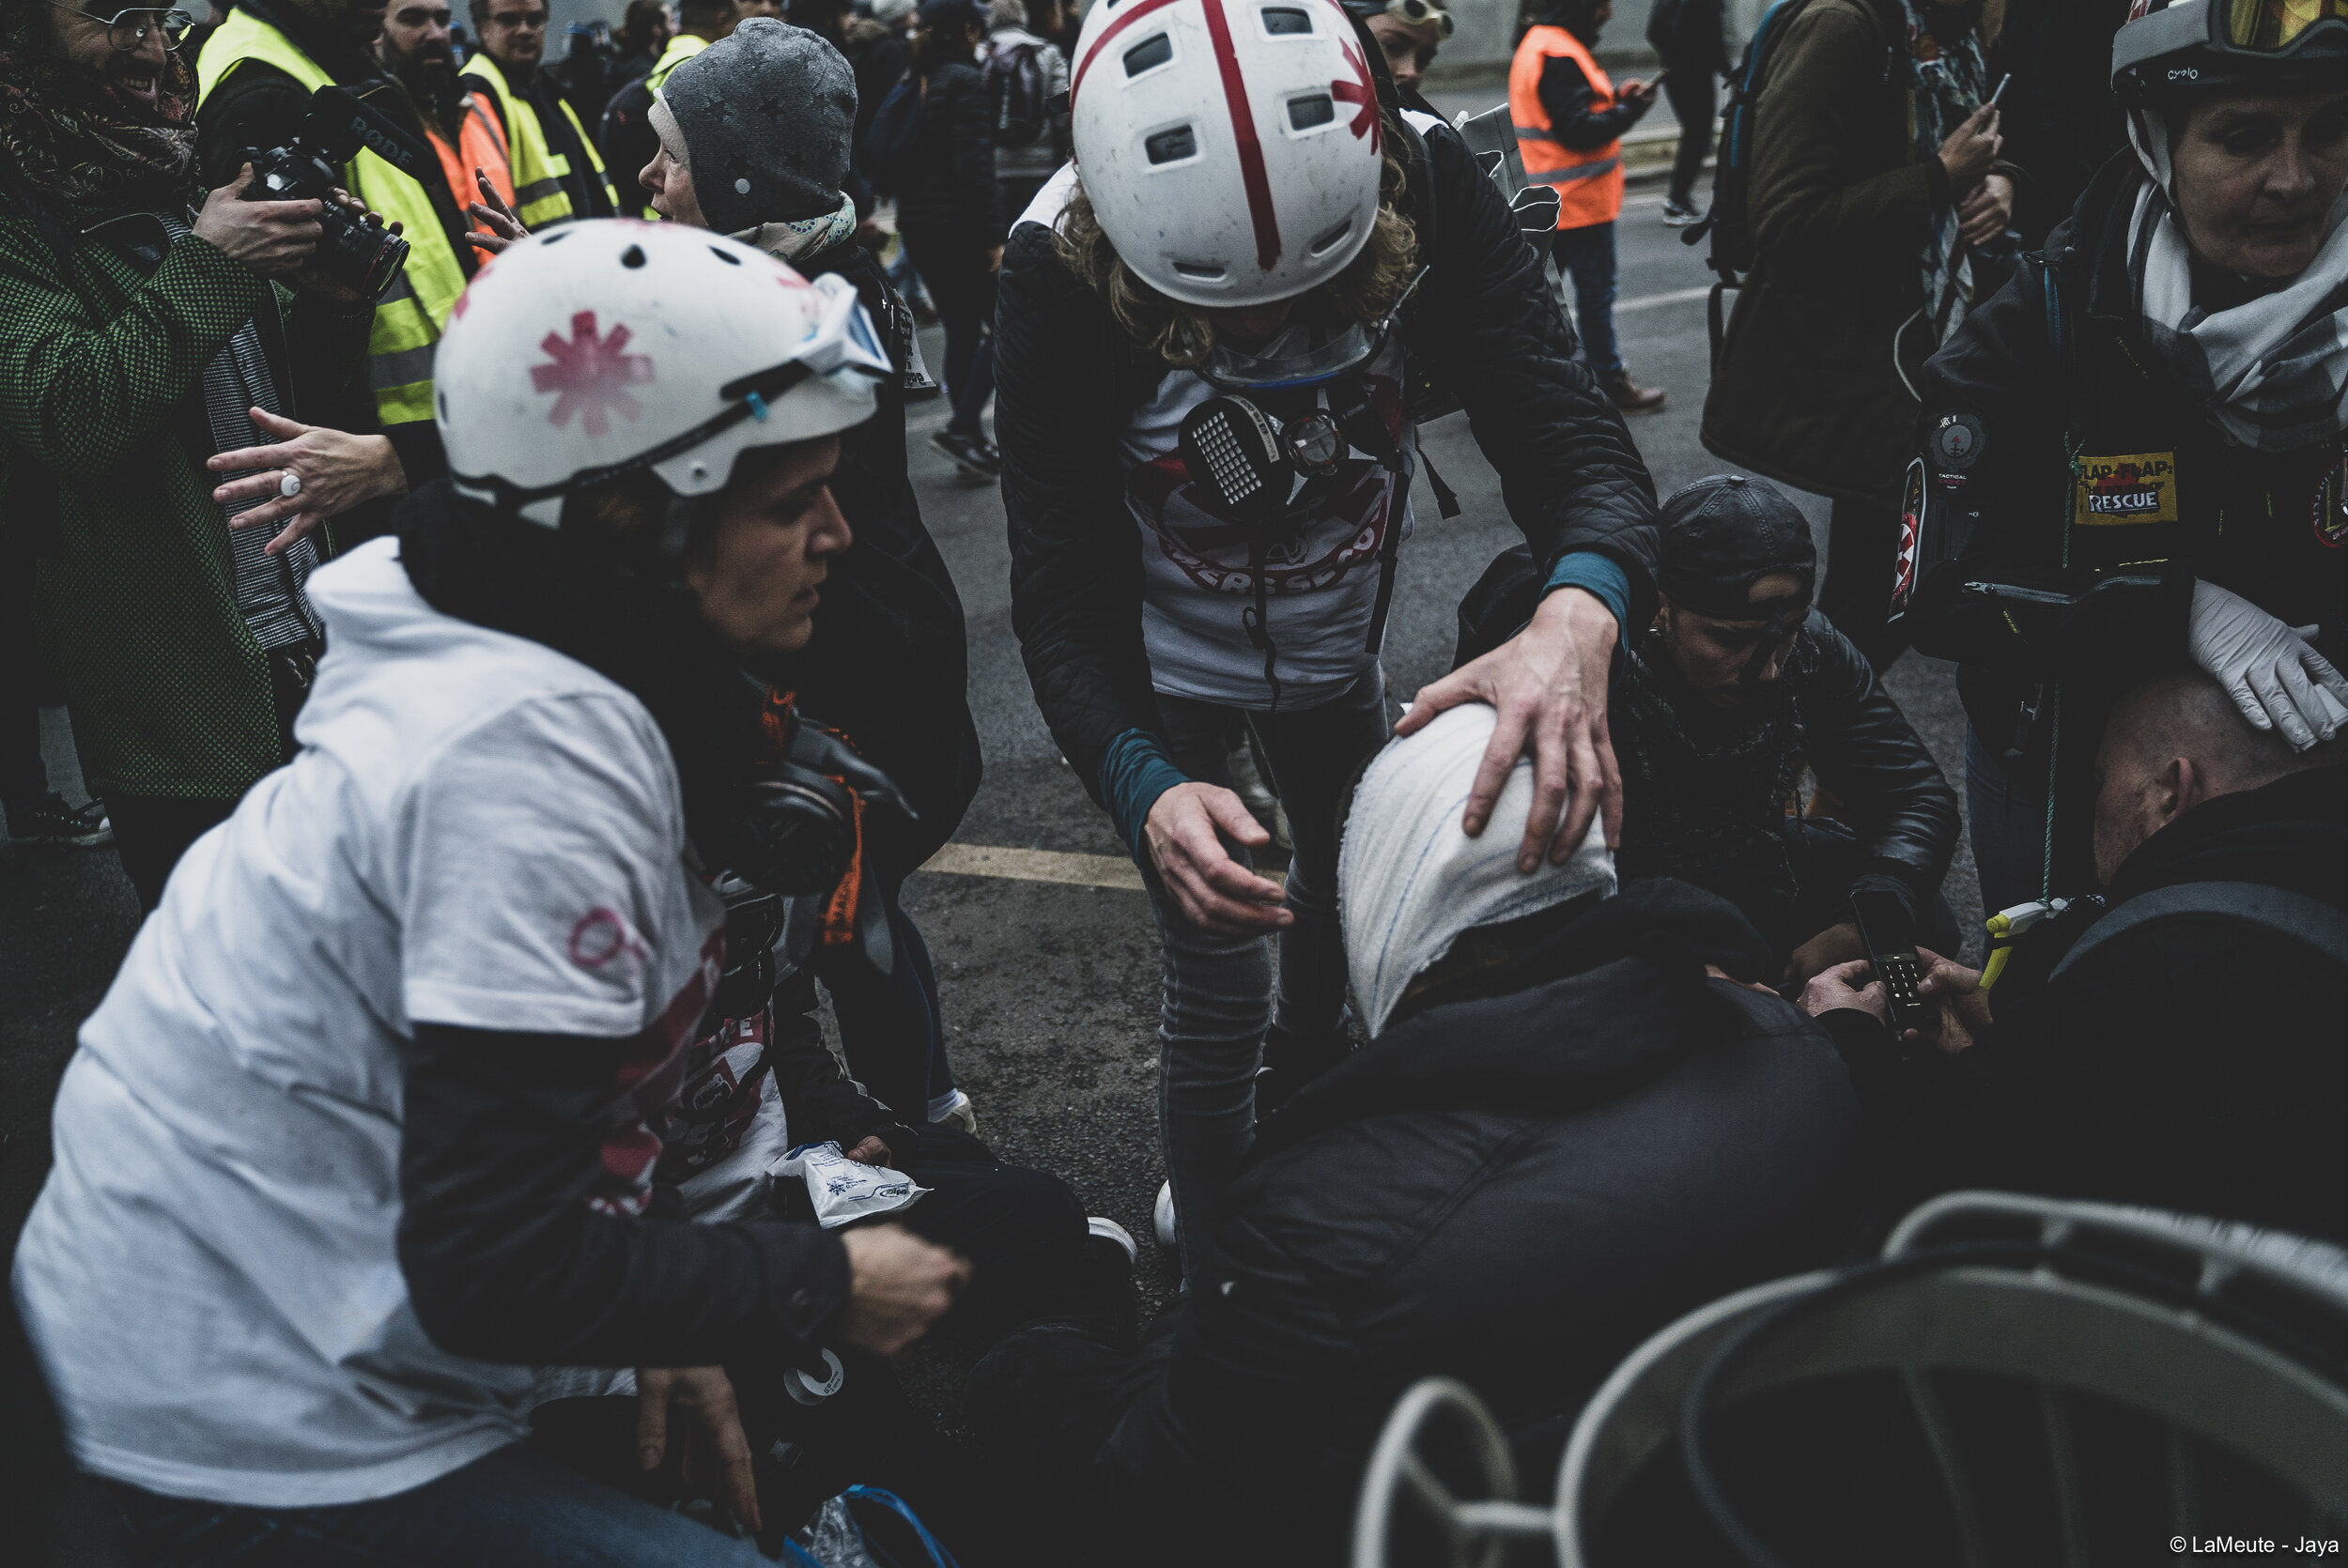   Boulevard Diderot, deux blessés sont soignés par les Street Medics.  ©LaMeute - Jaya 